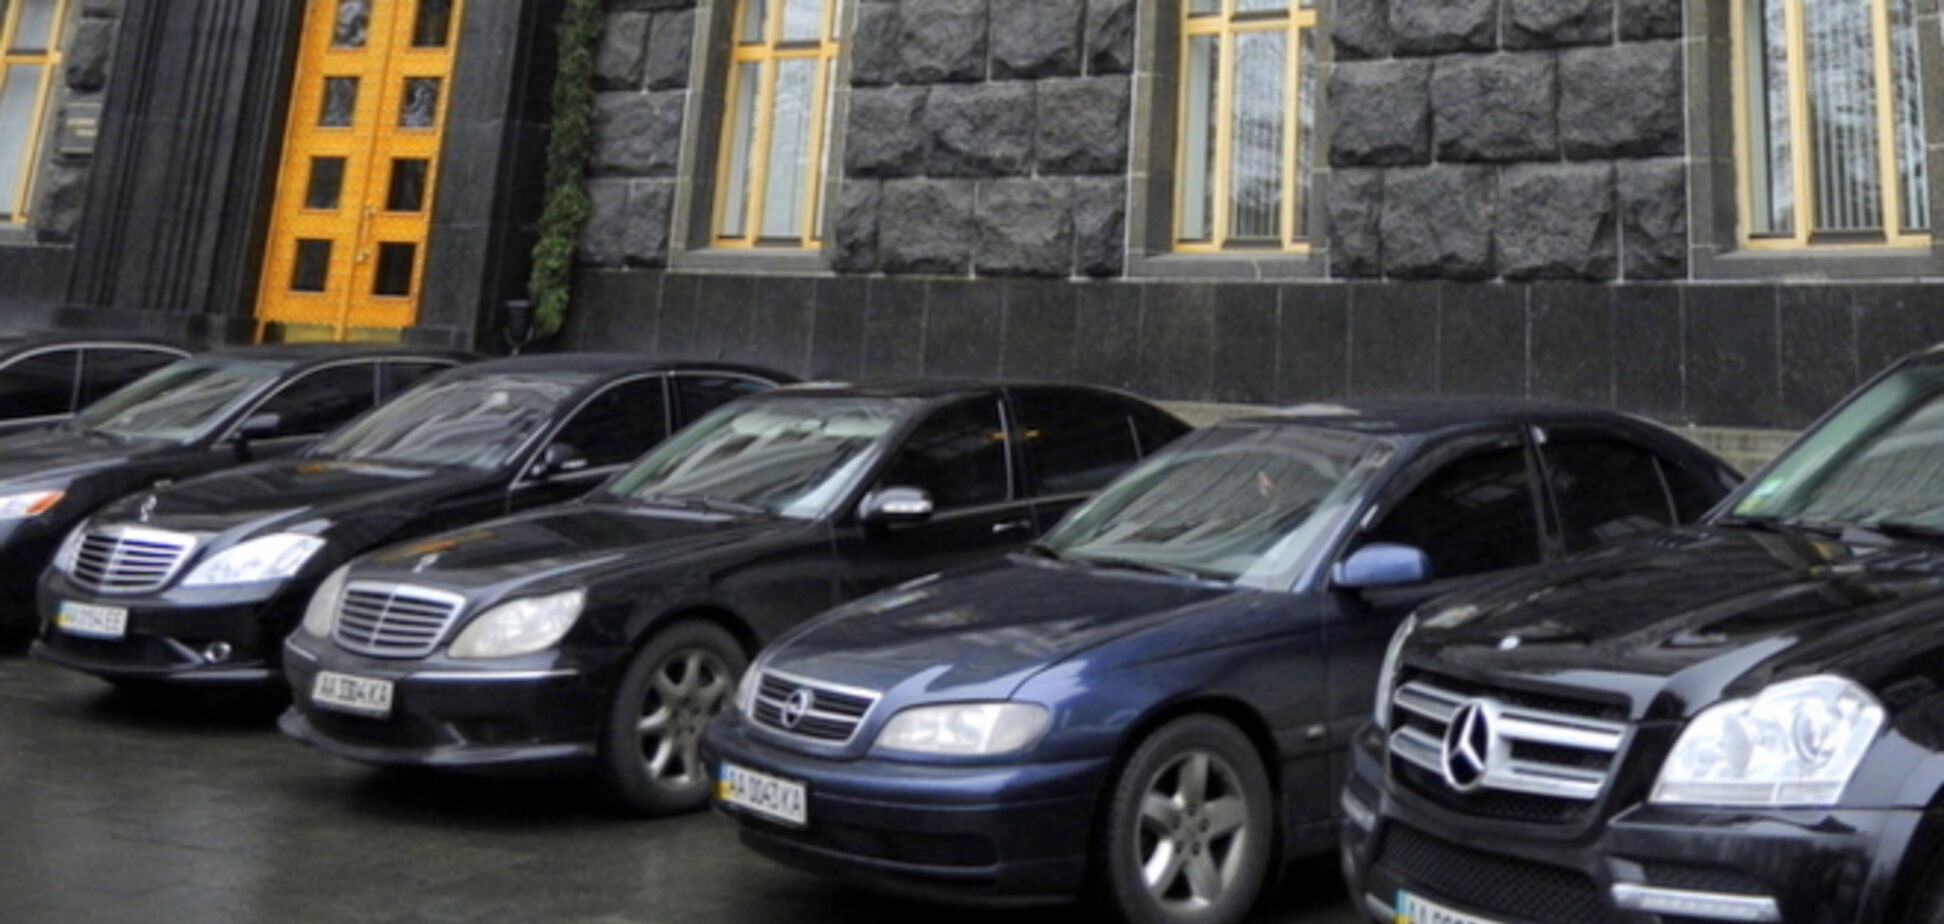 Стала известна дата проведения торгов по продаже машин Януковича